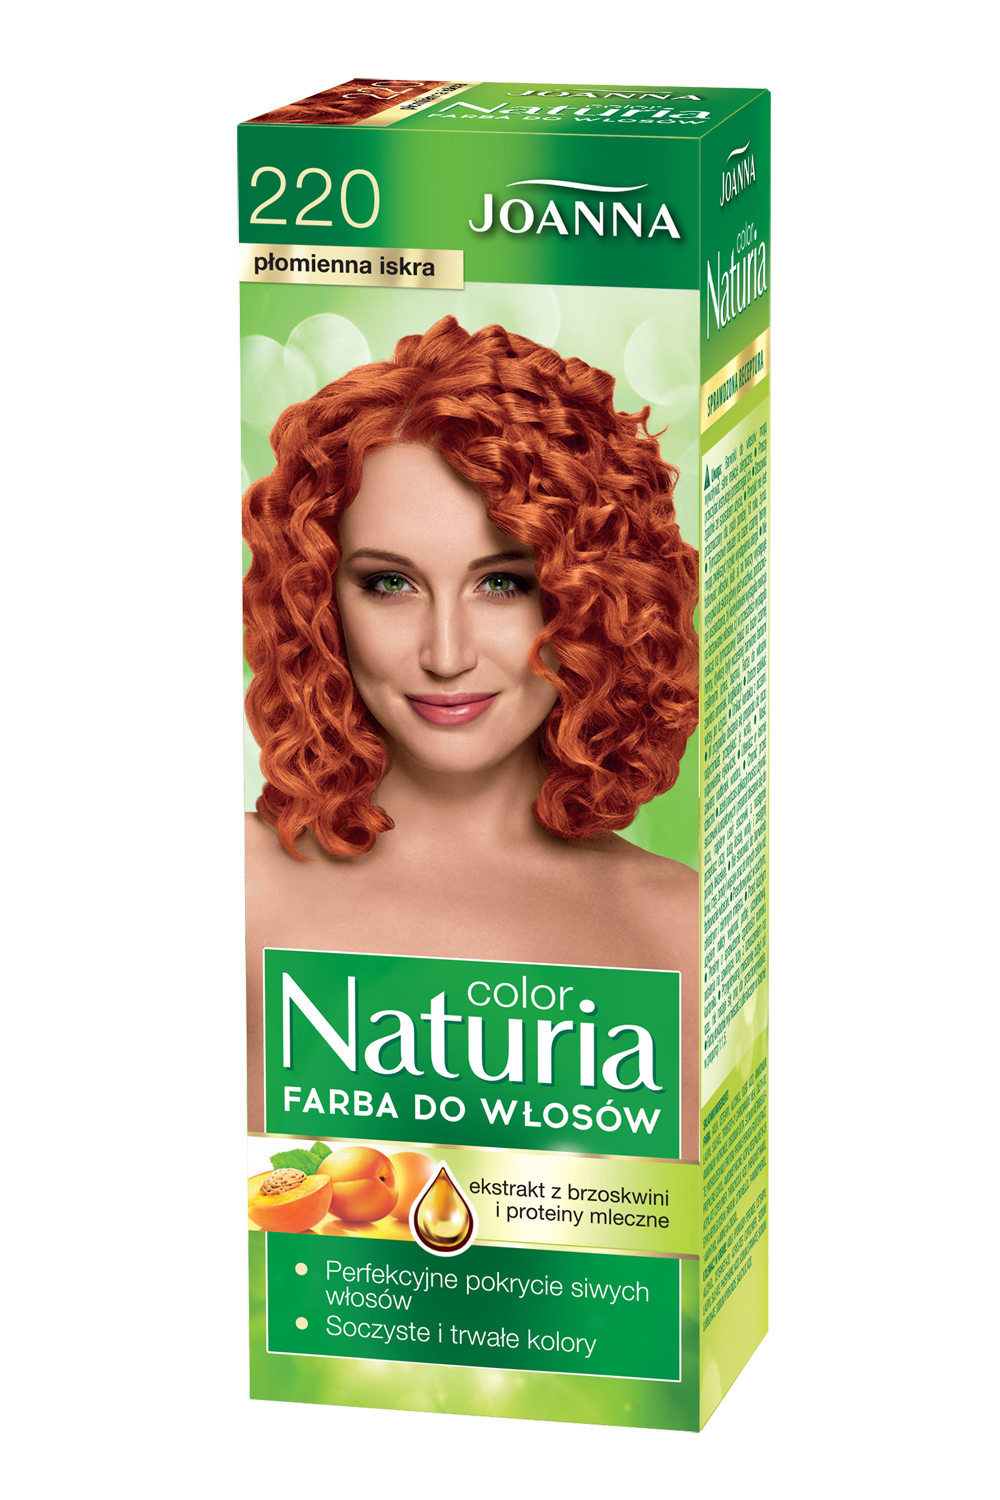 Farba do włosów Joanna Naturia Color w odcieniu nr 220 płomienna iskra